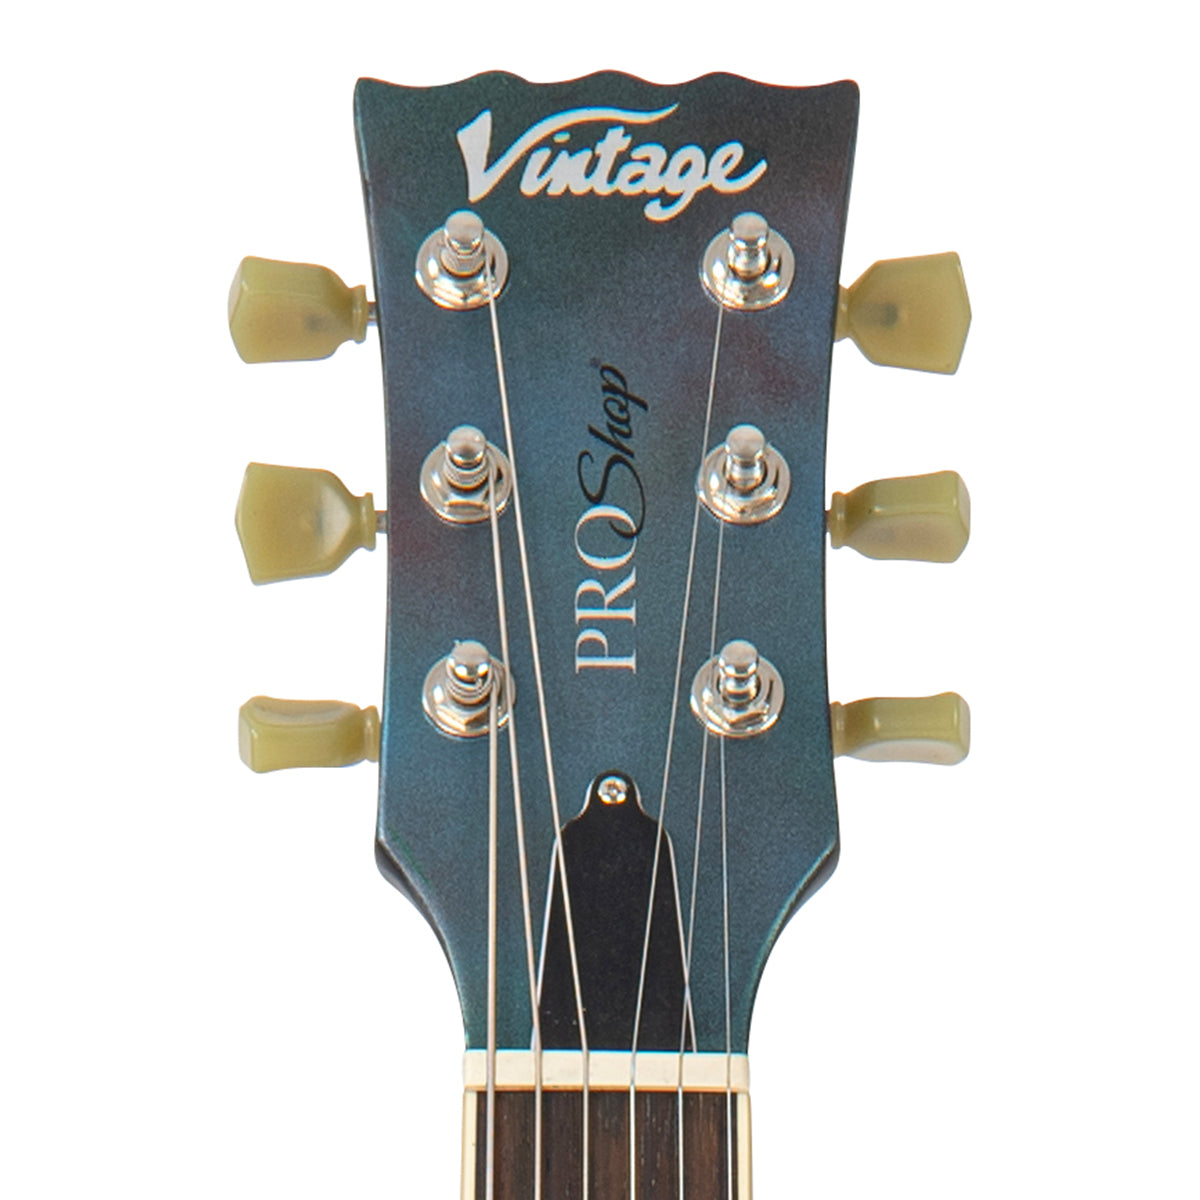 Vintage V100 ProShop Unique ~ 'Nebula', Electric Guitars for sale at Richards Guitars.